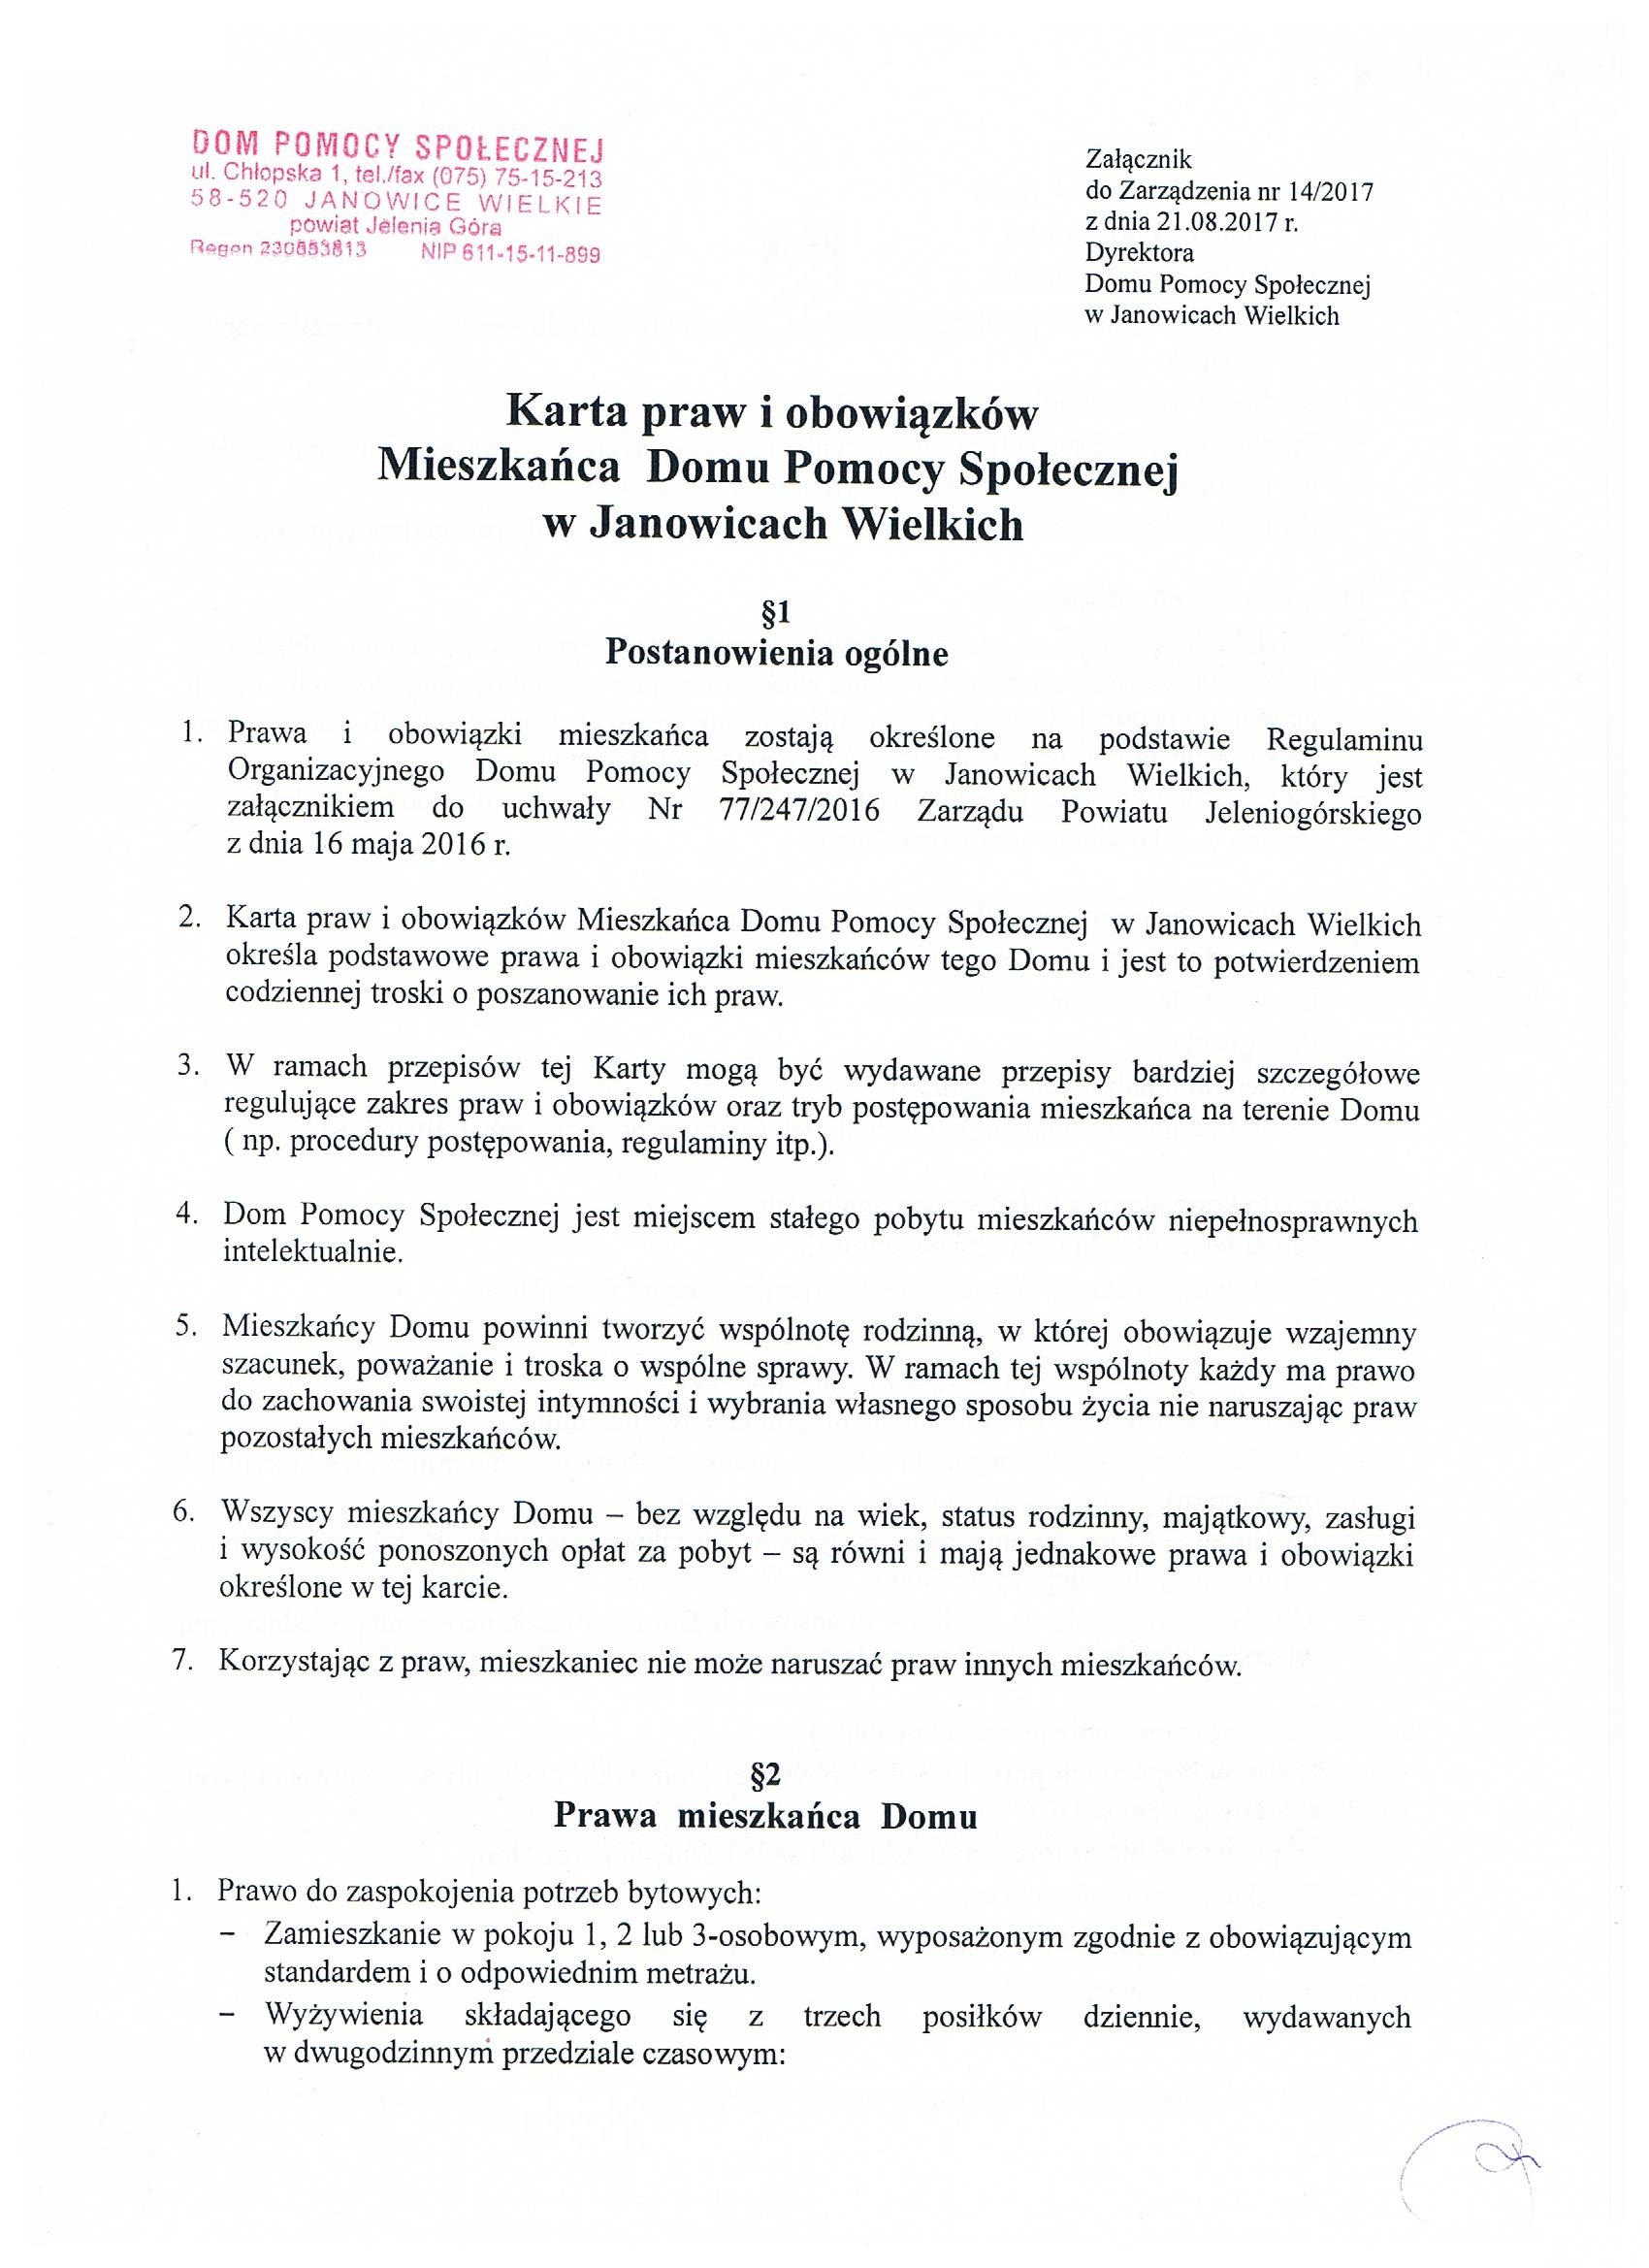 Karta praw i obowiązków Mieszkańca Domu Pomocy Społecznej w Janowicach Wielkich